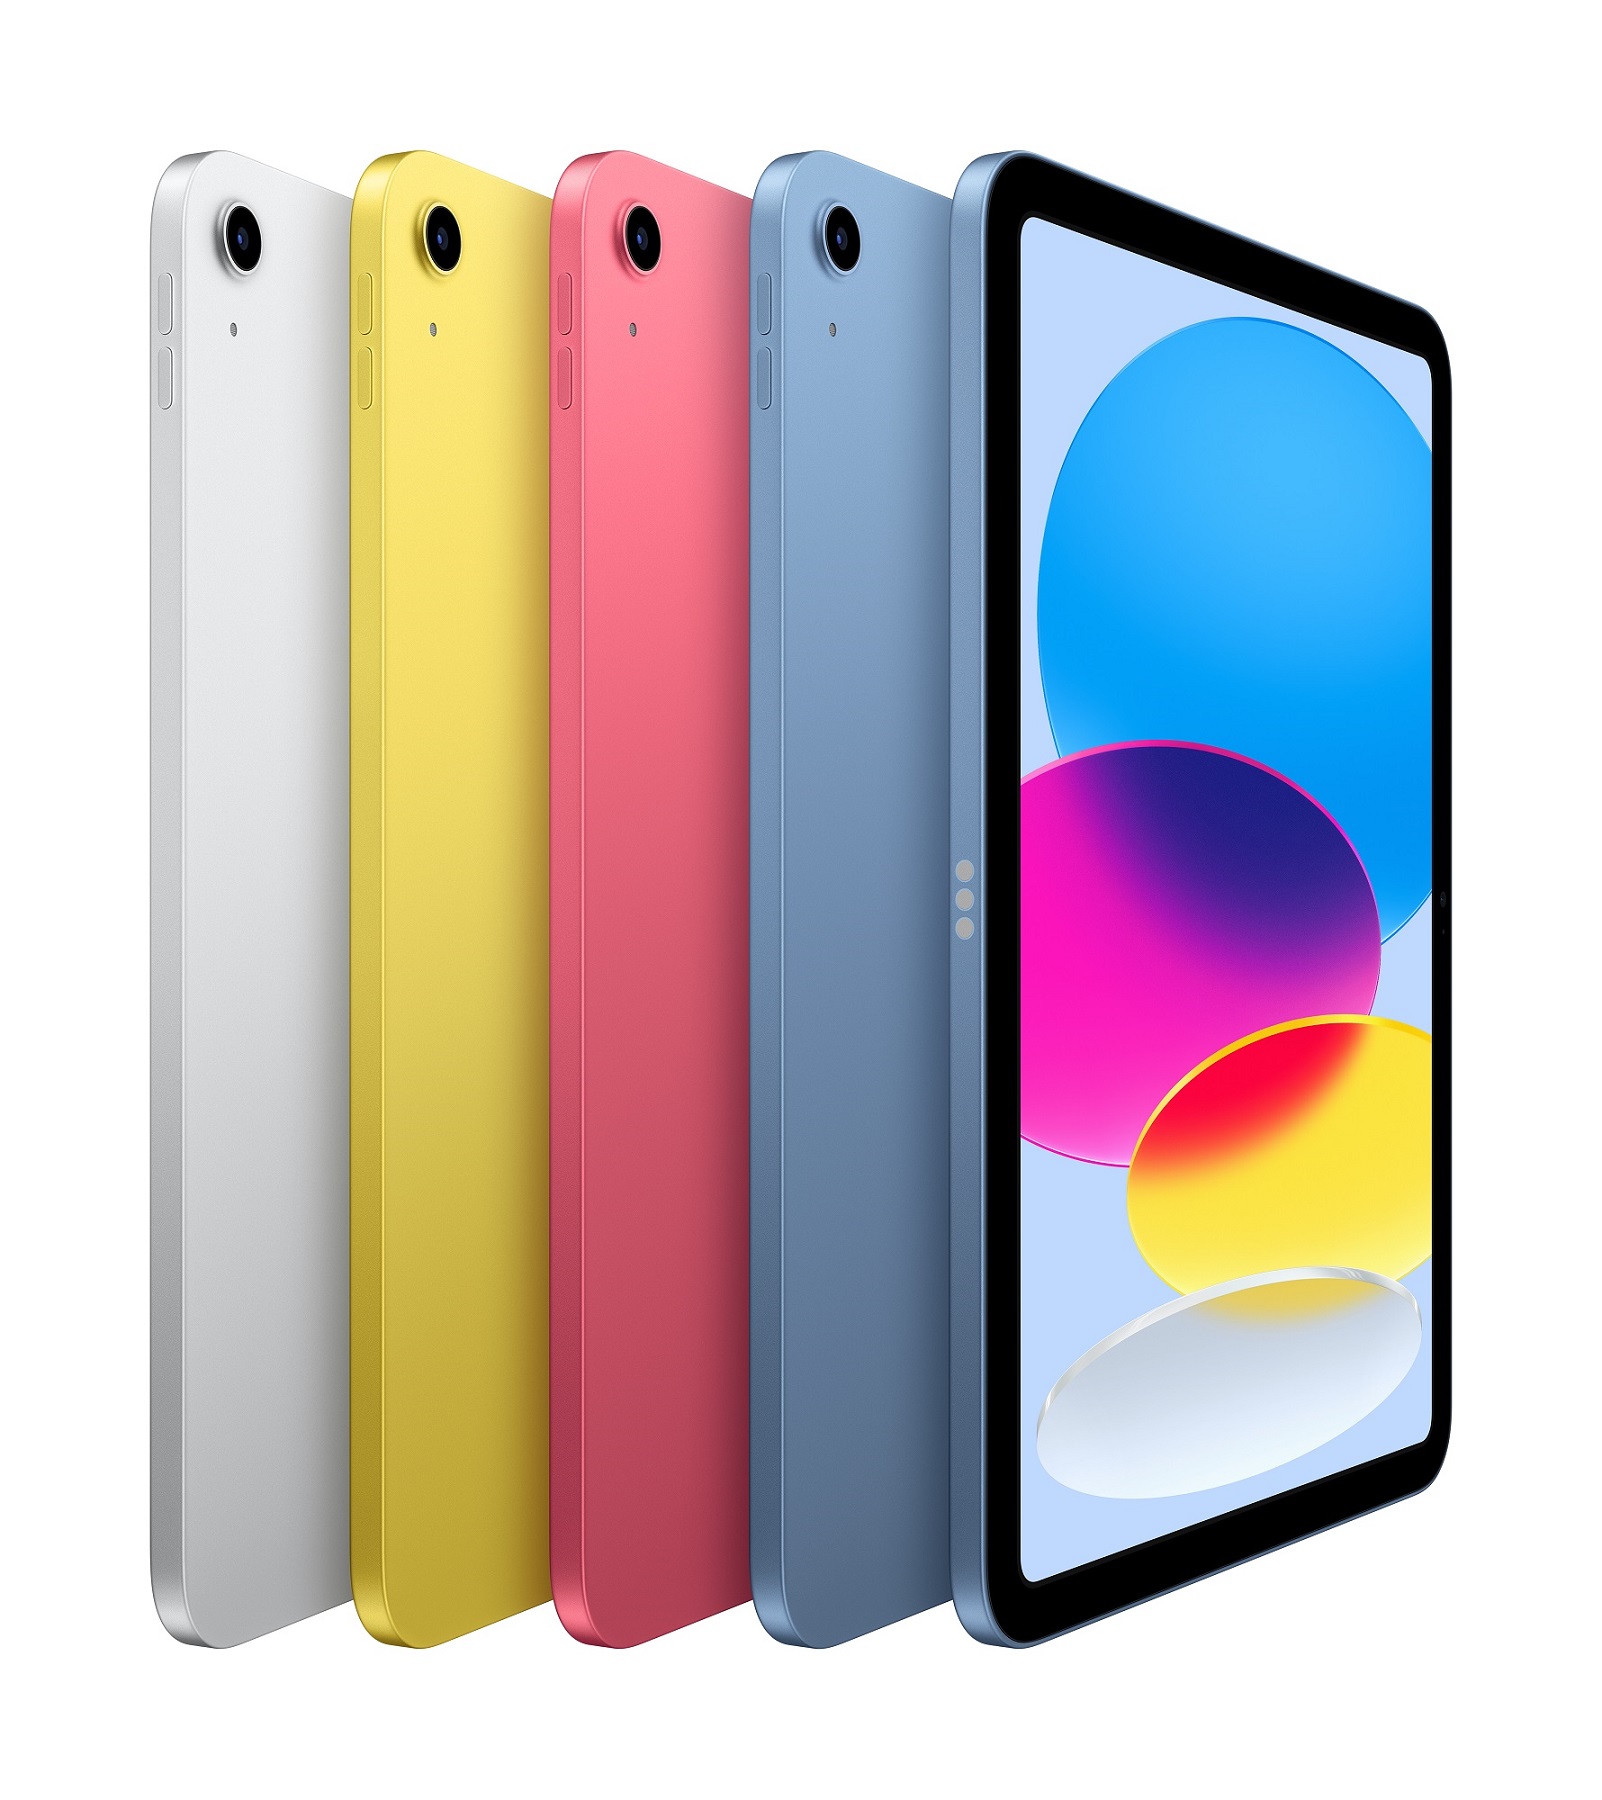 Obrázek iPad Wi-Fi 64GB Silver (2022)